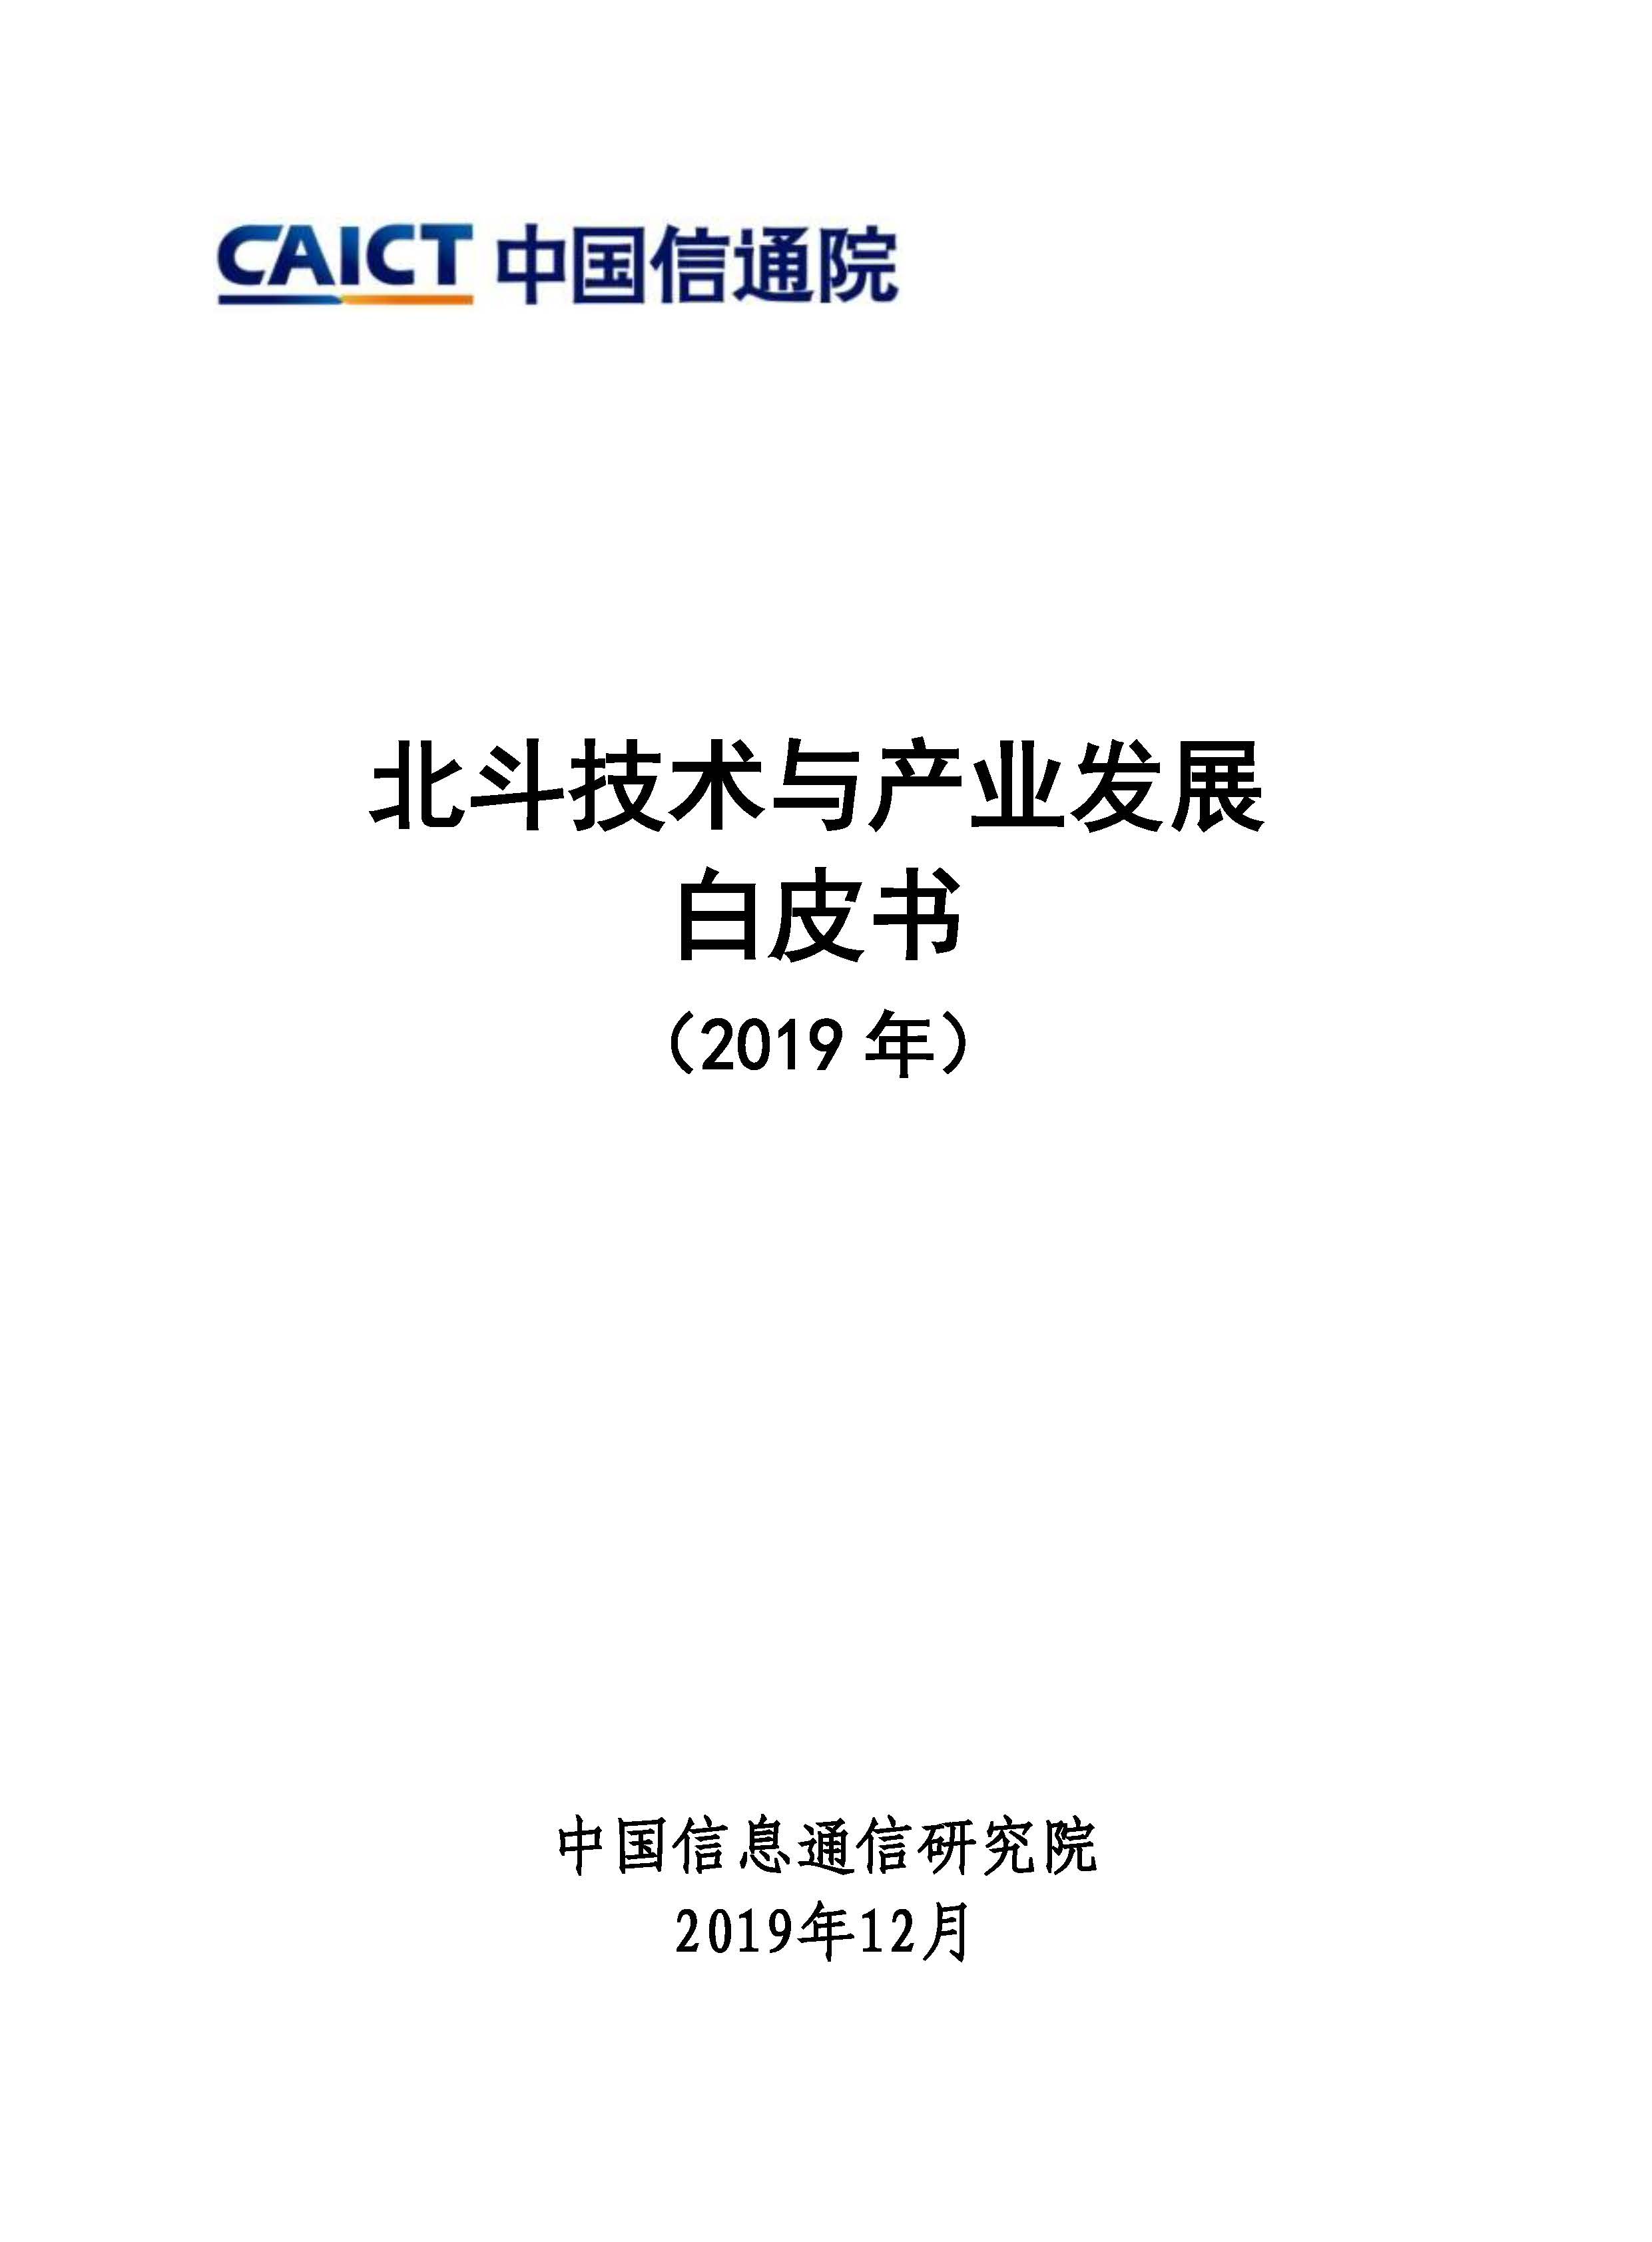 北斗技术与产业发展白皮书（2019）首页.jpg